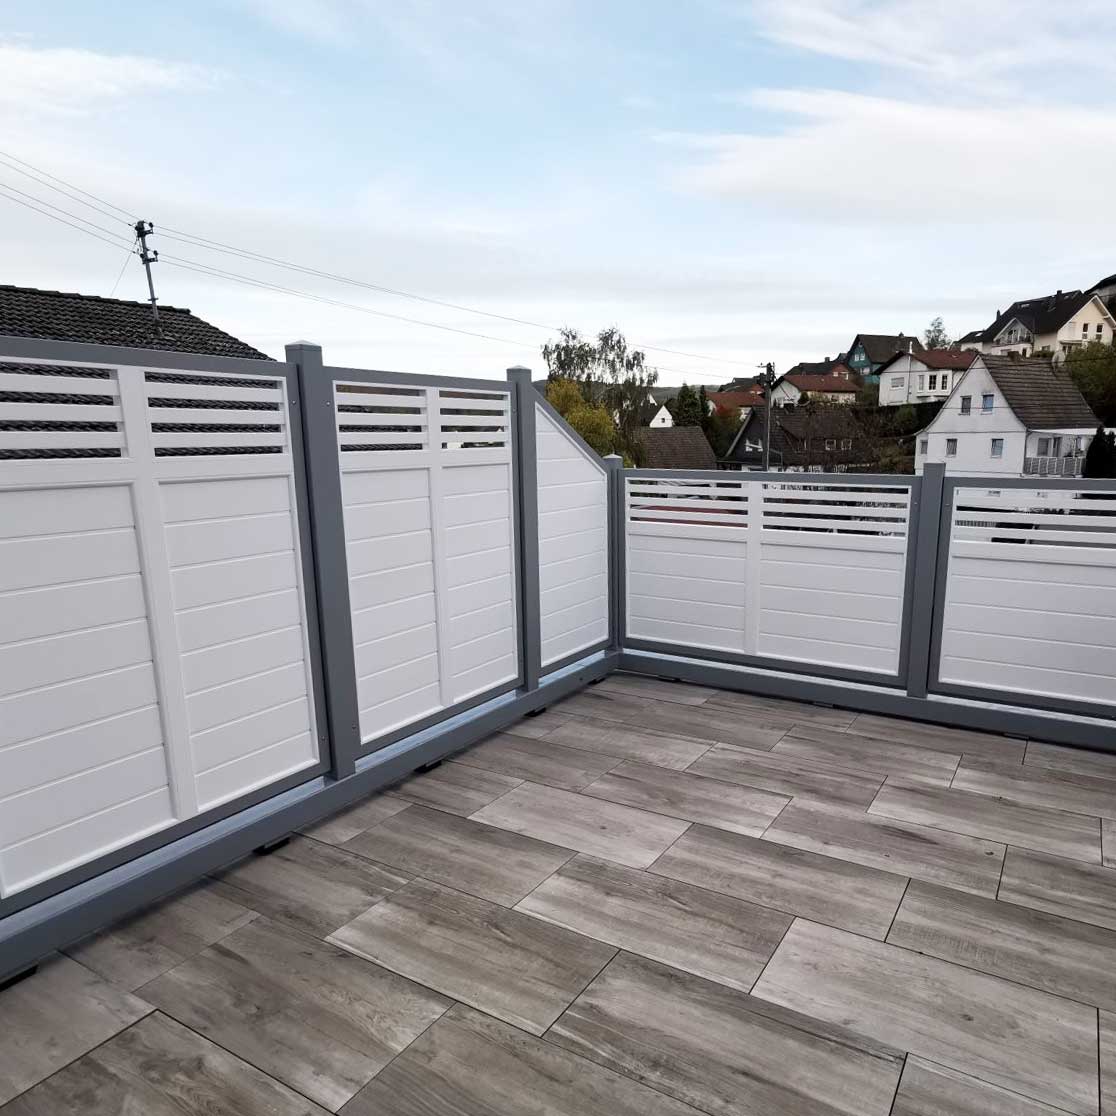 Sichtschutzzaun aus Kunststoff PVC in weiß und grau als Designsichtschutz mit Rhombusgitter auf Dachterrasse